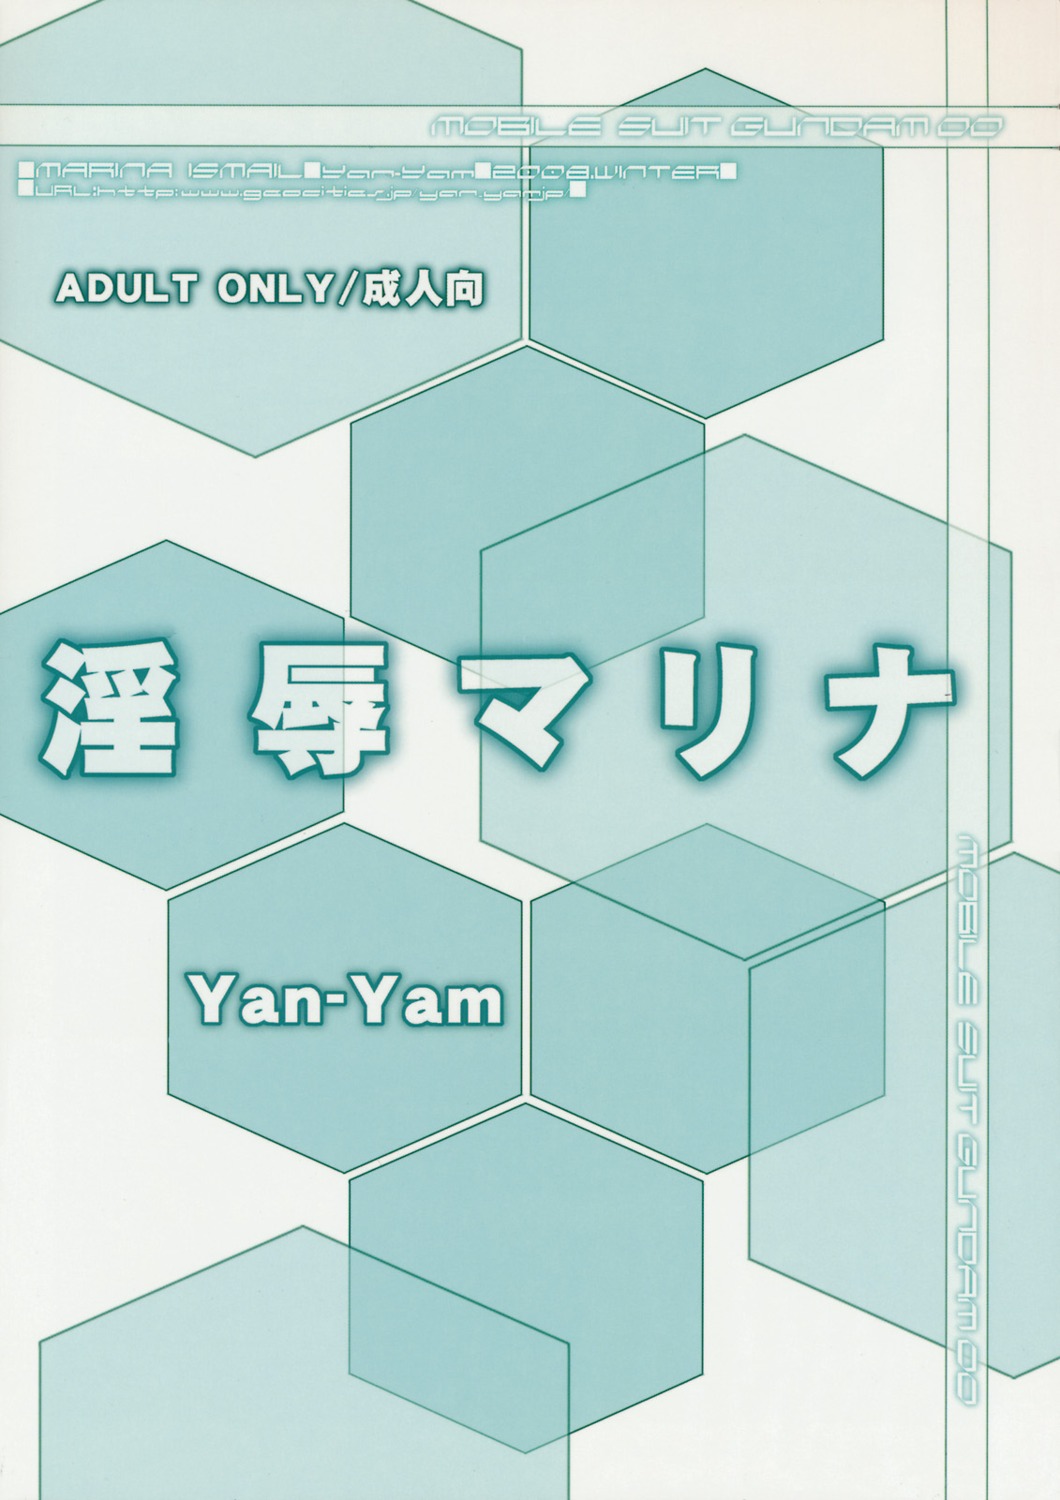 monochrome text yan-yam